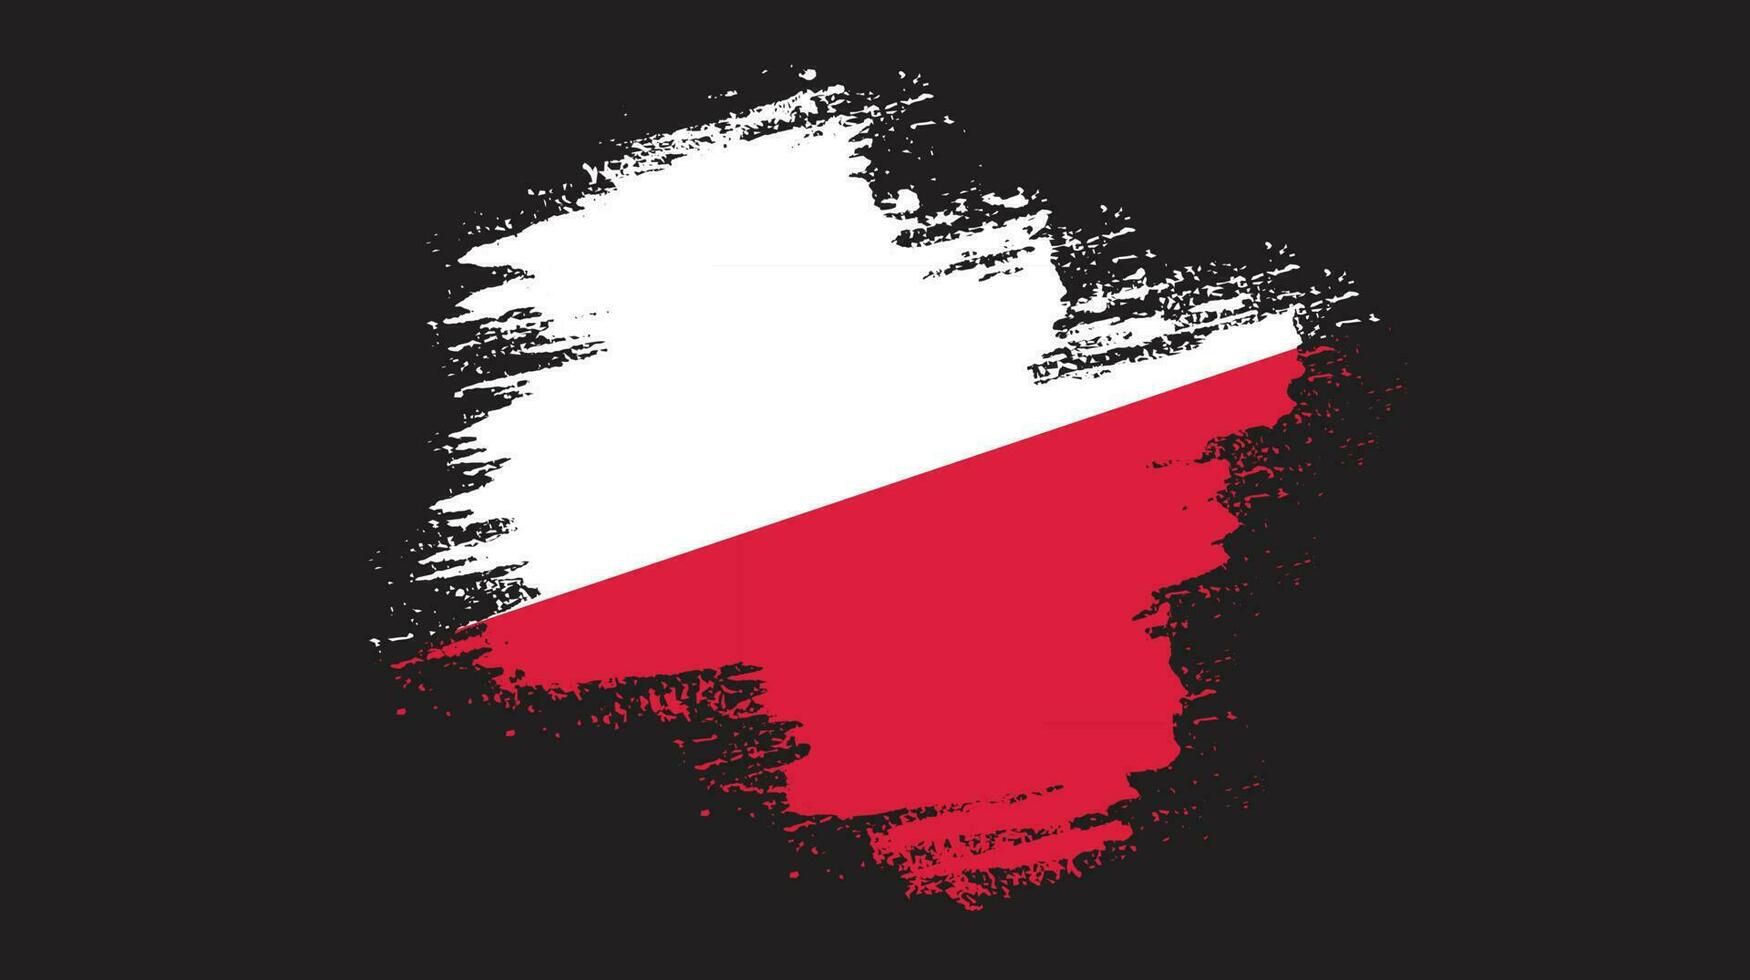 Splatter brush stroke Poland flag vector